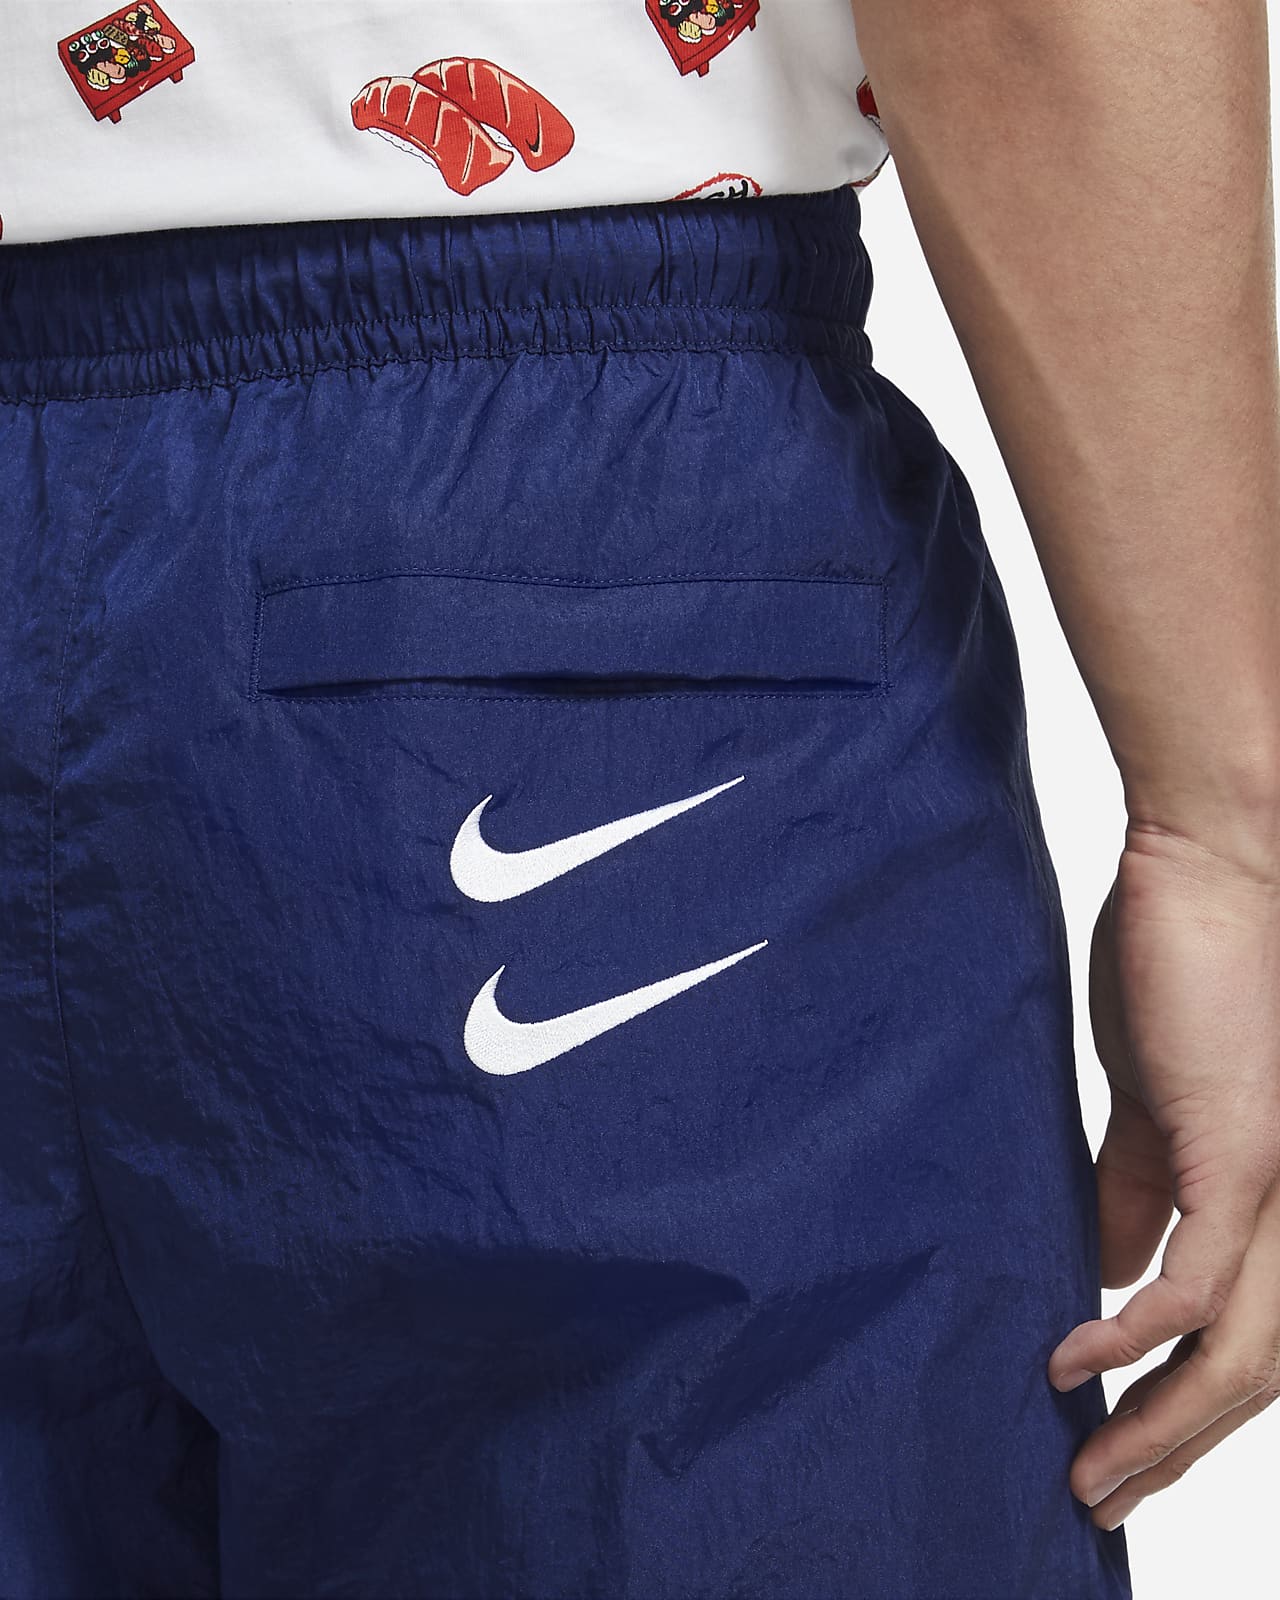 Pantalones tejidos para hombre Nike.com